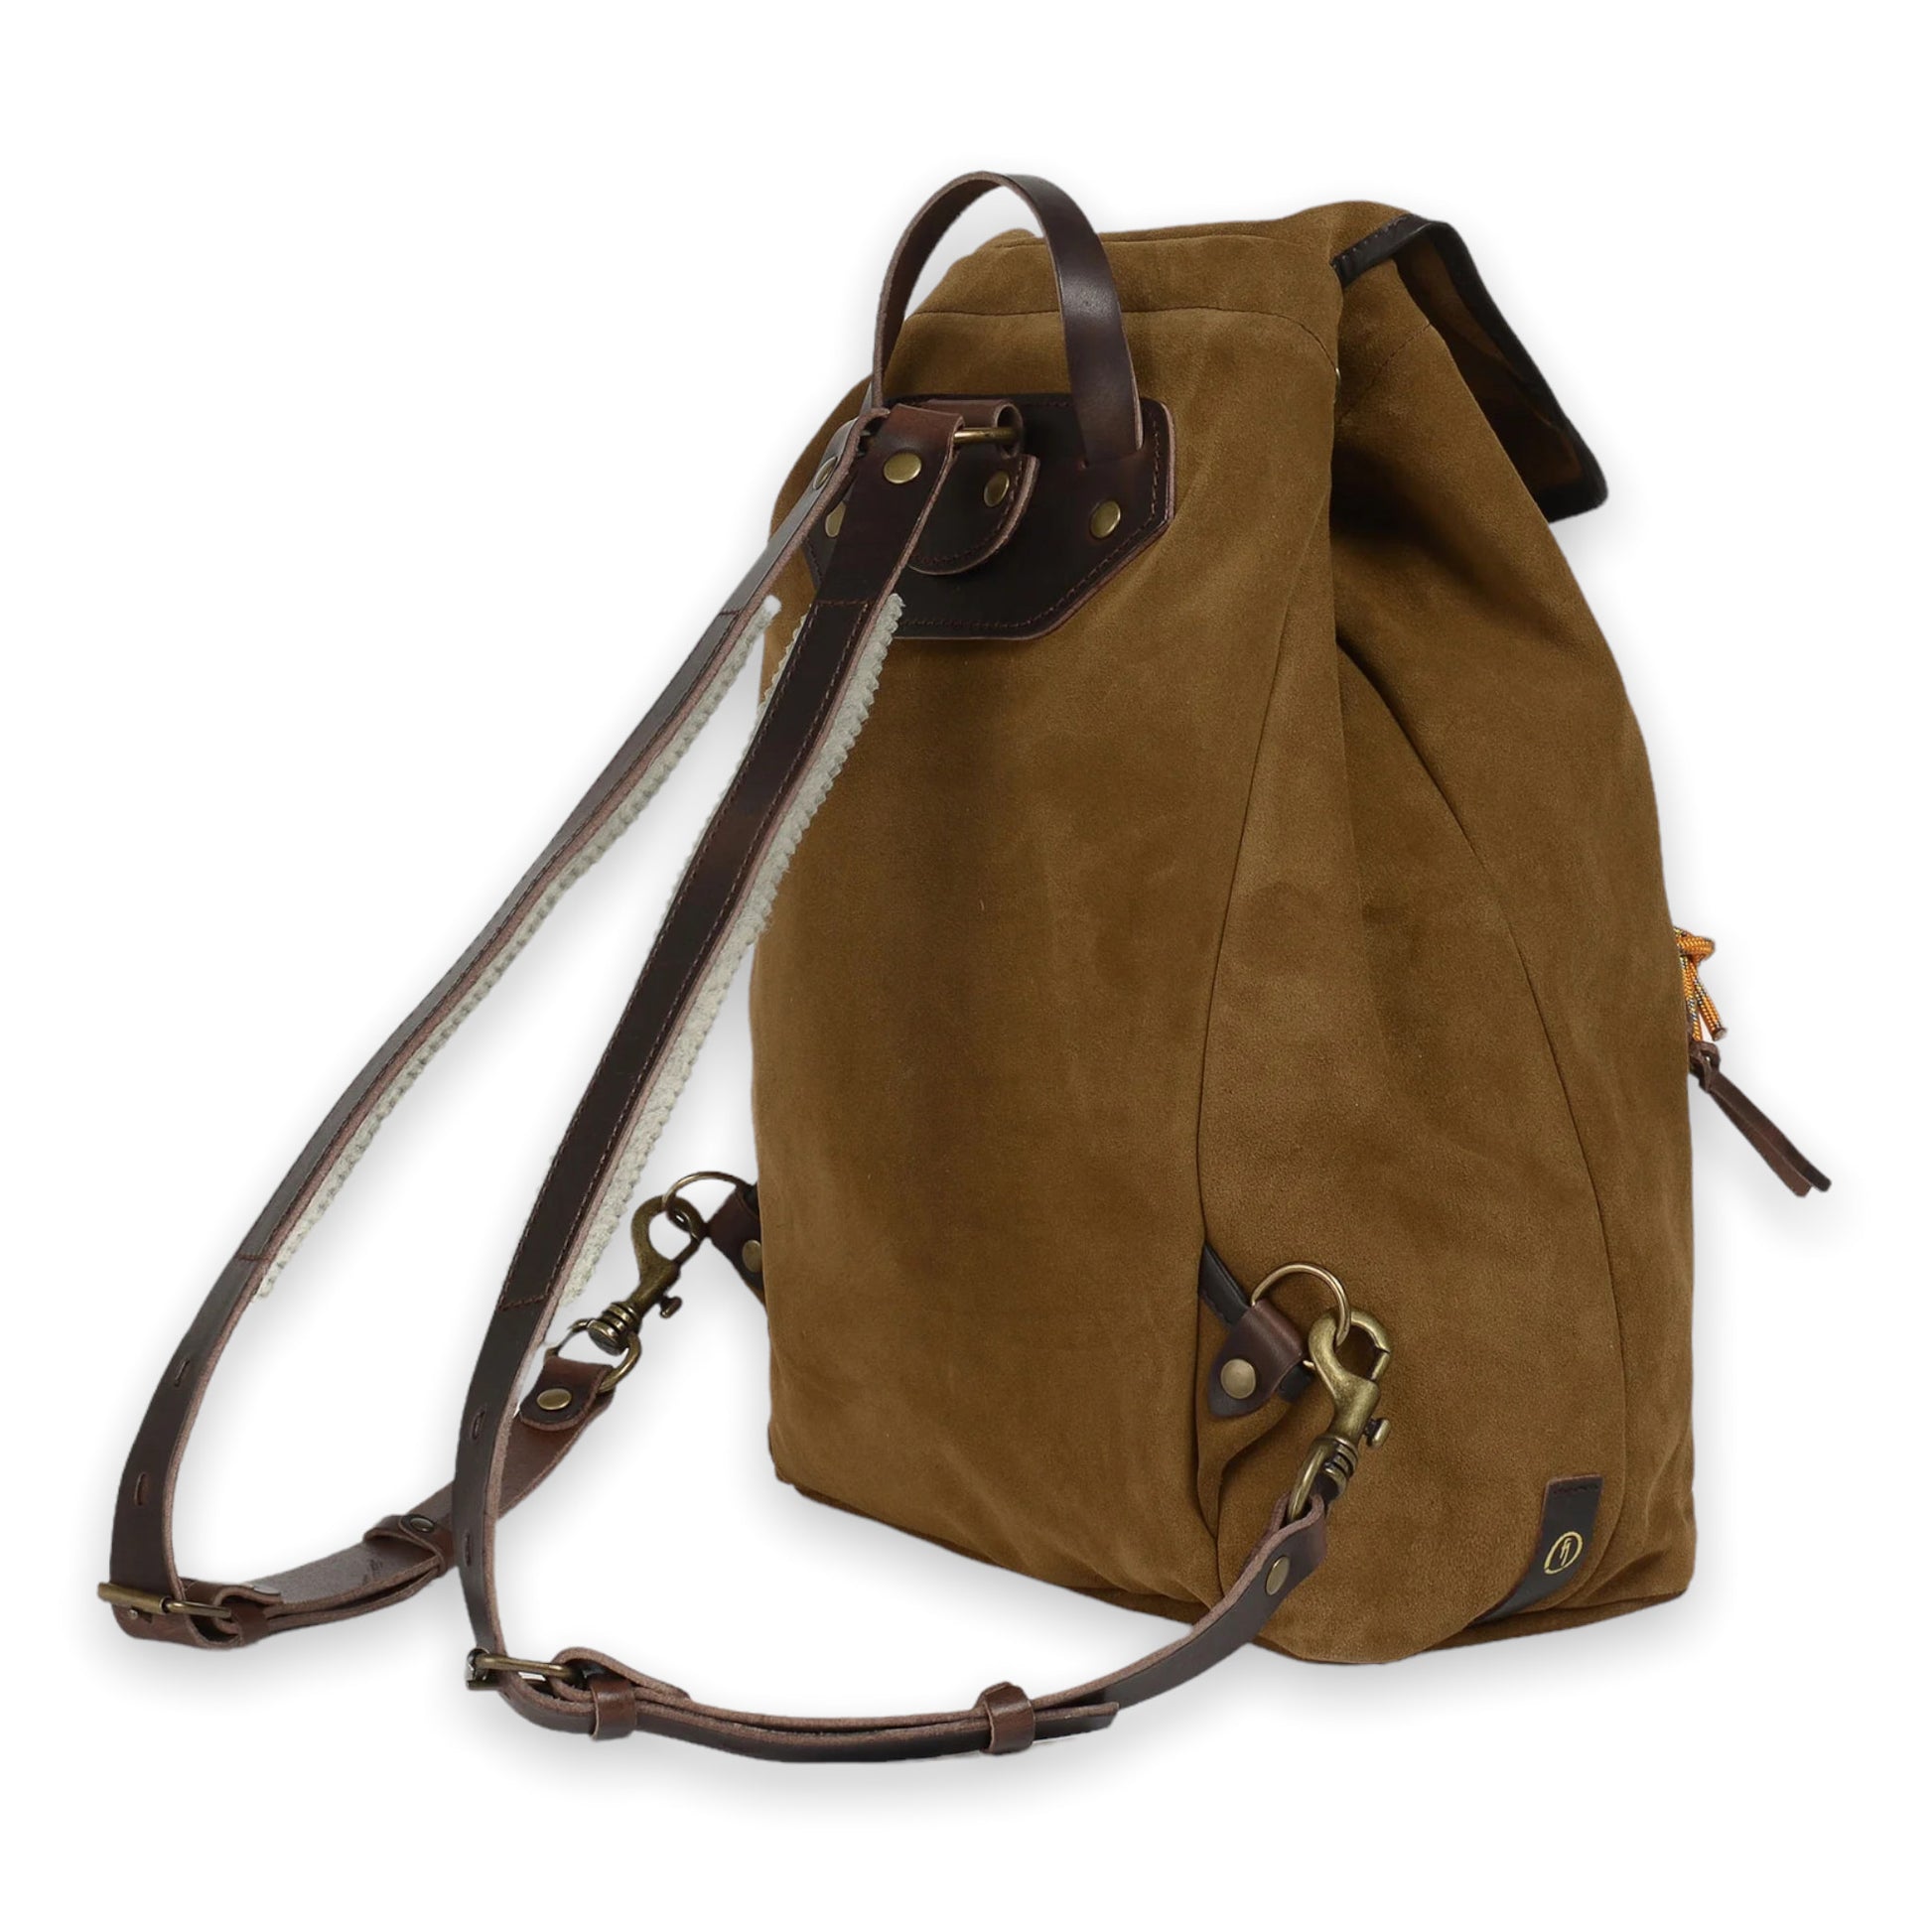 Bleu de Chauffe Leather Postman Bag Laptop backpack Brown Color 15